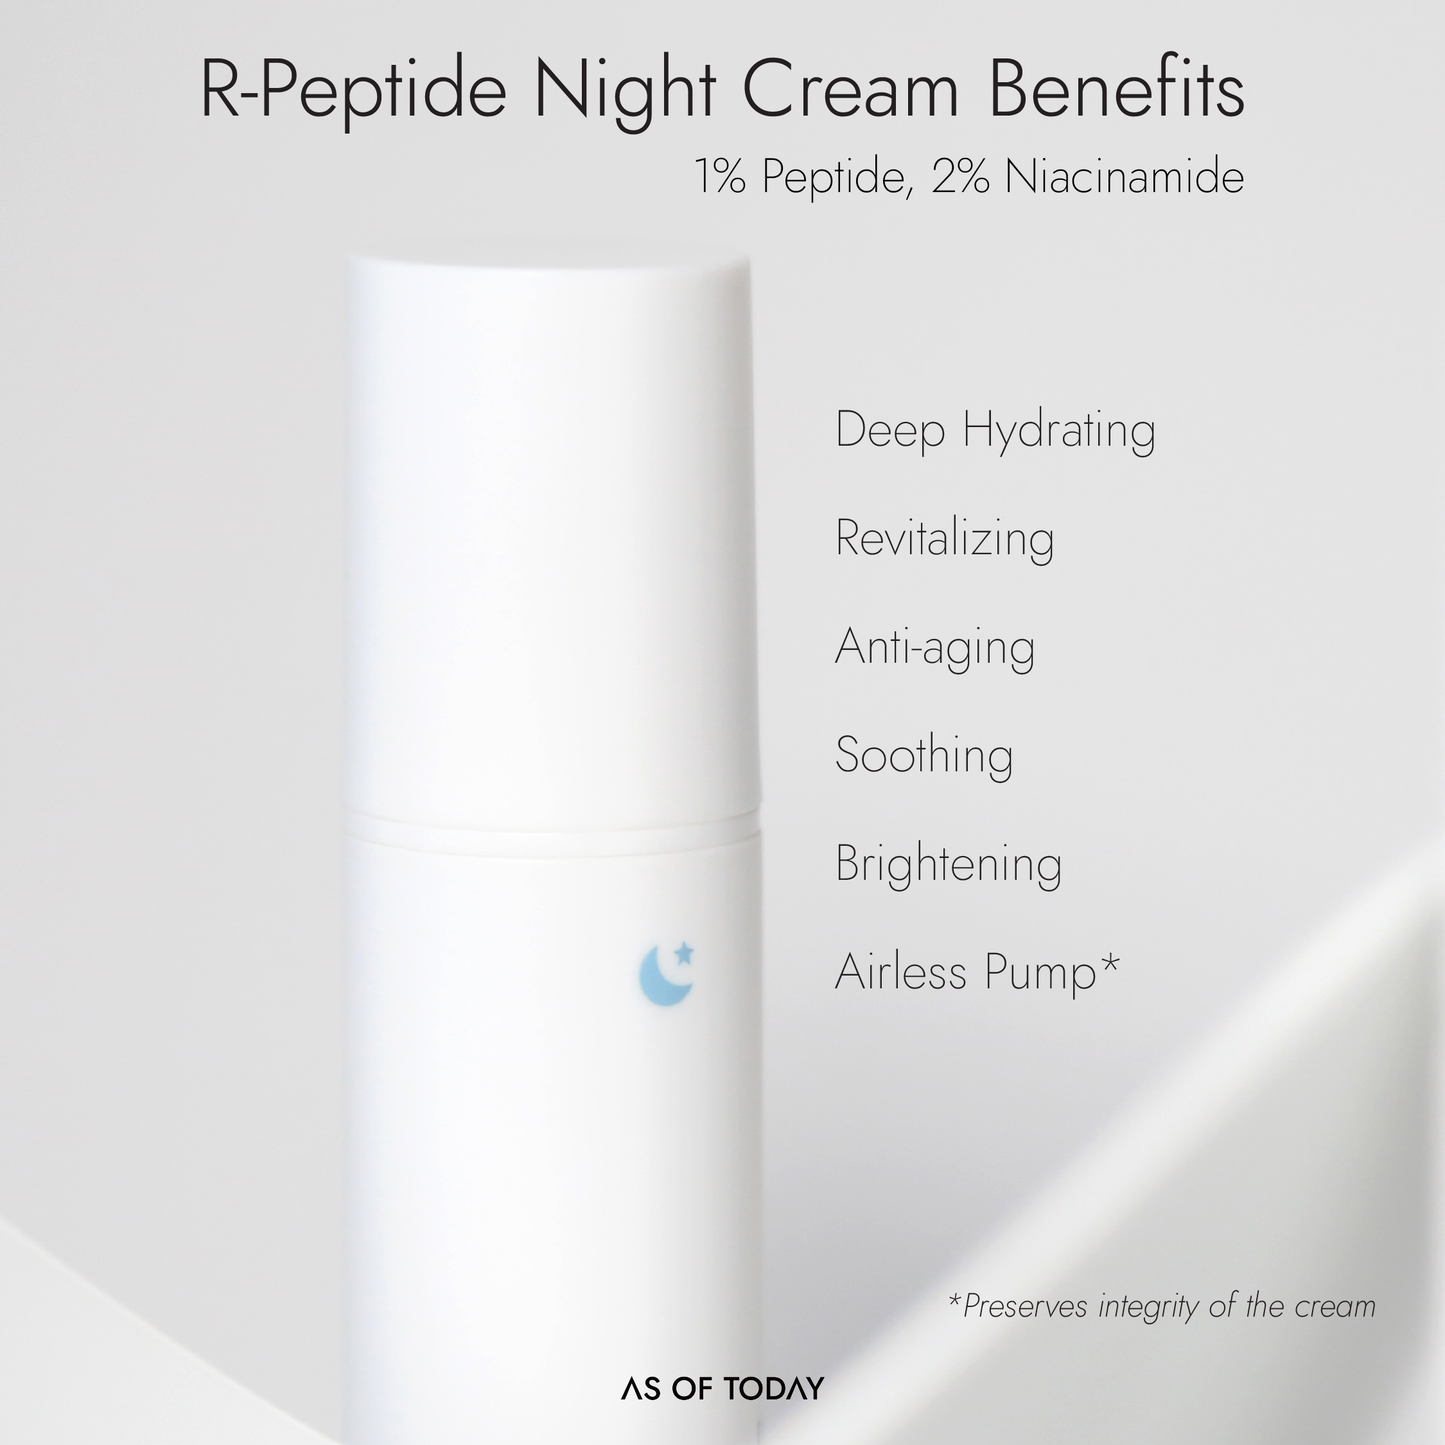 R-Peptide Night Cream